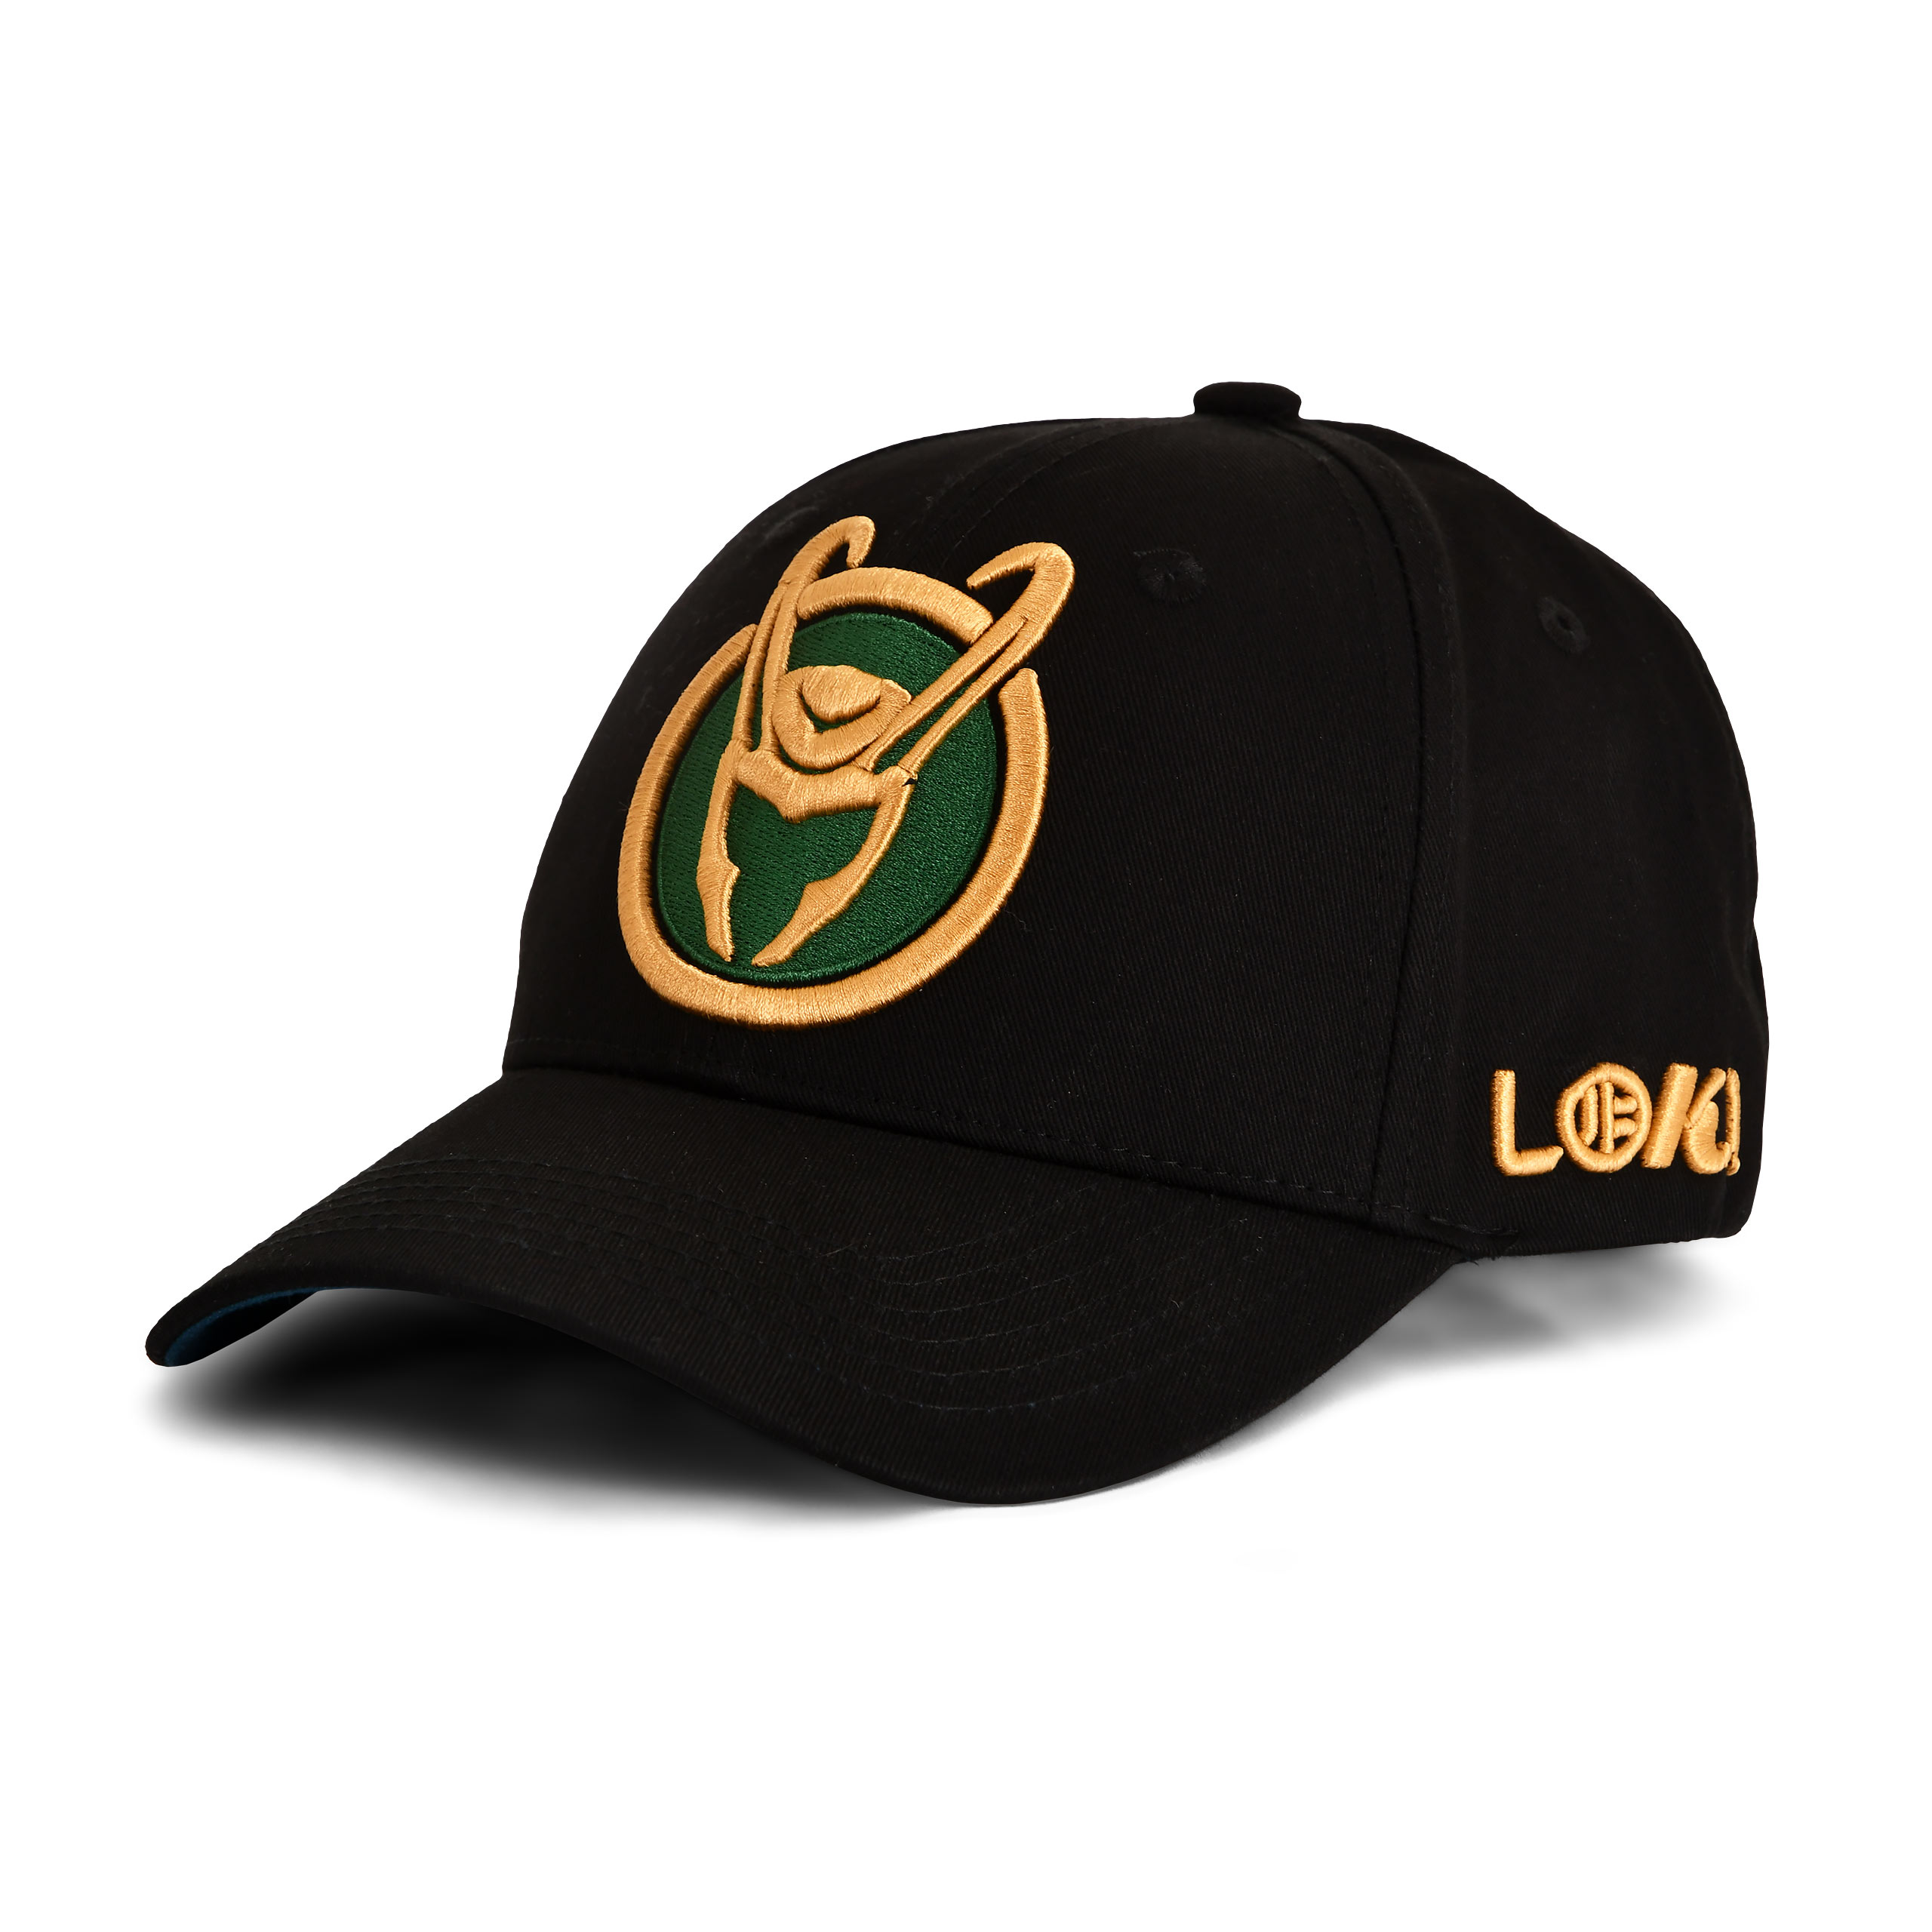 Loki - Logo Basecap schwarz